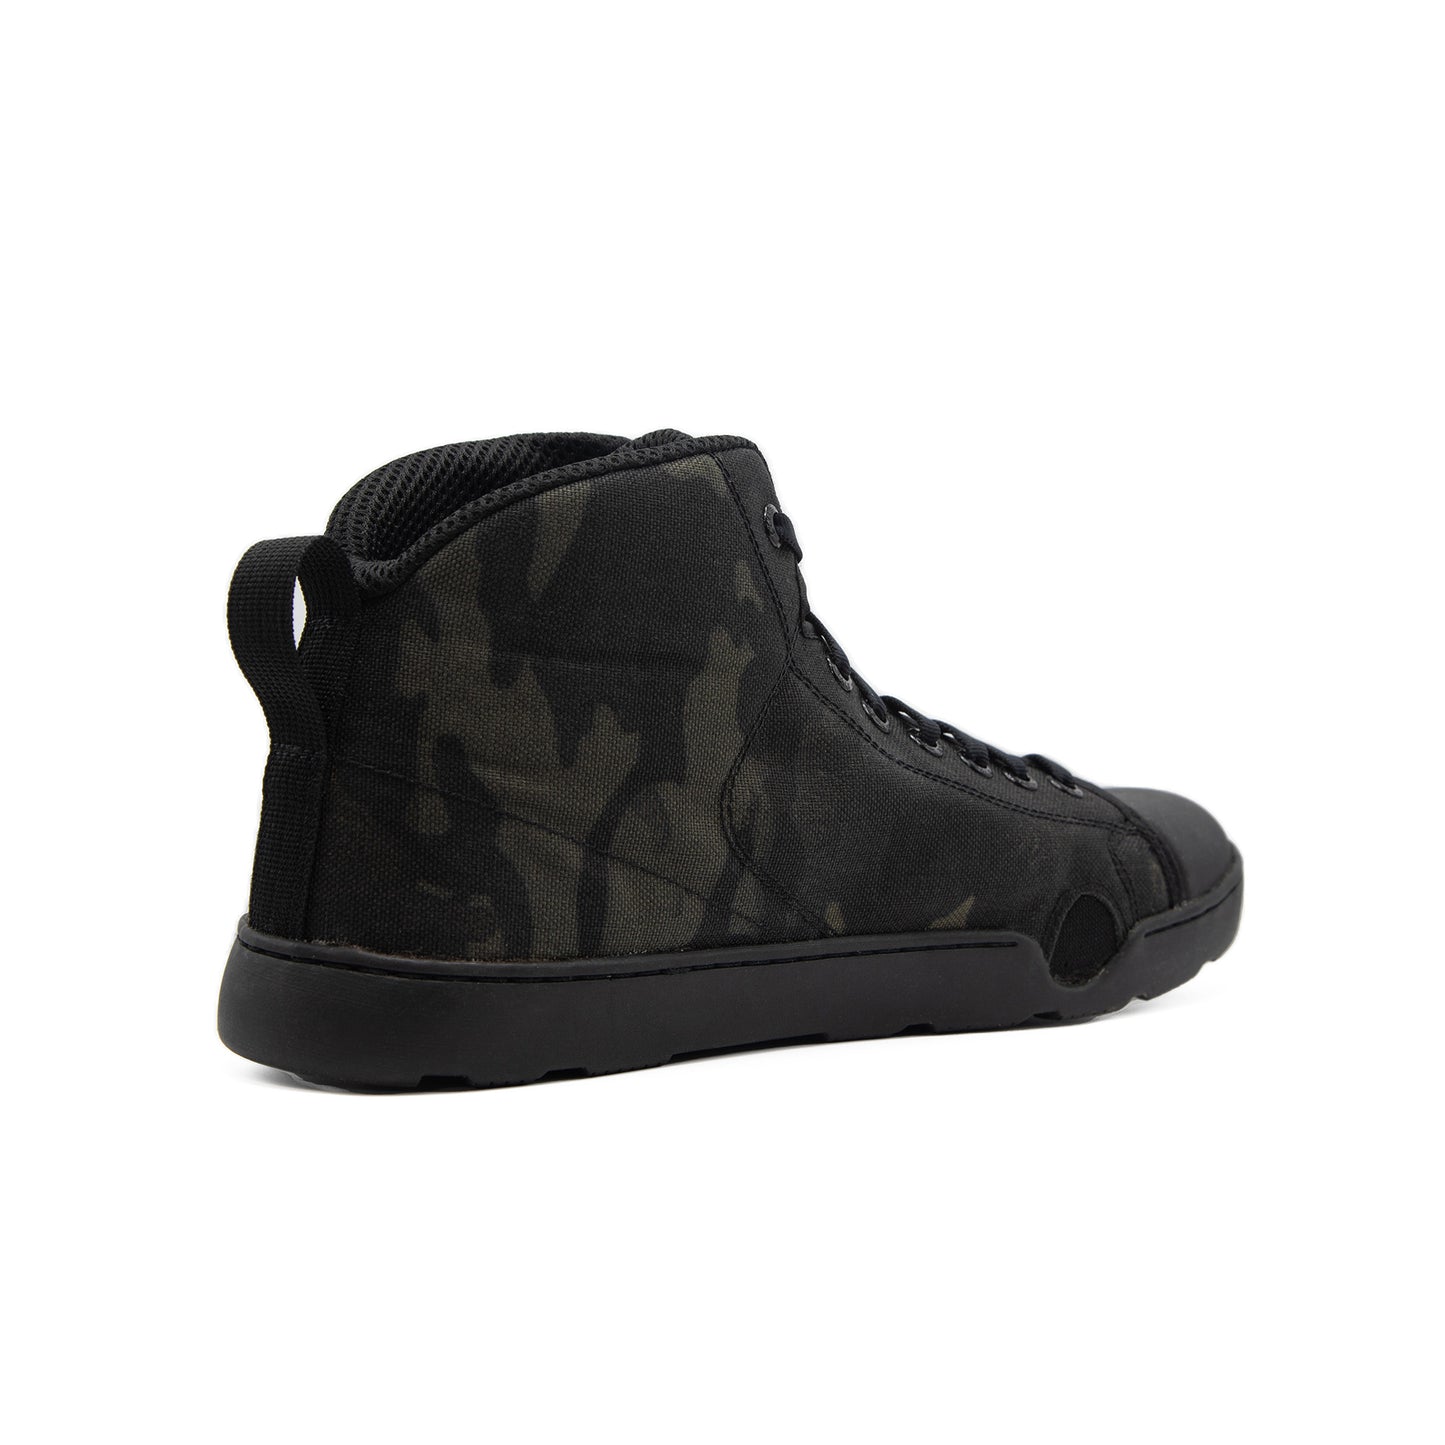 Tactical Shoes - Boots - Multicam Black